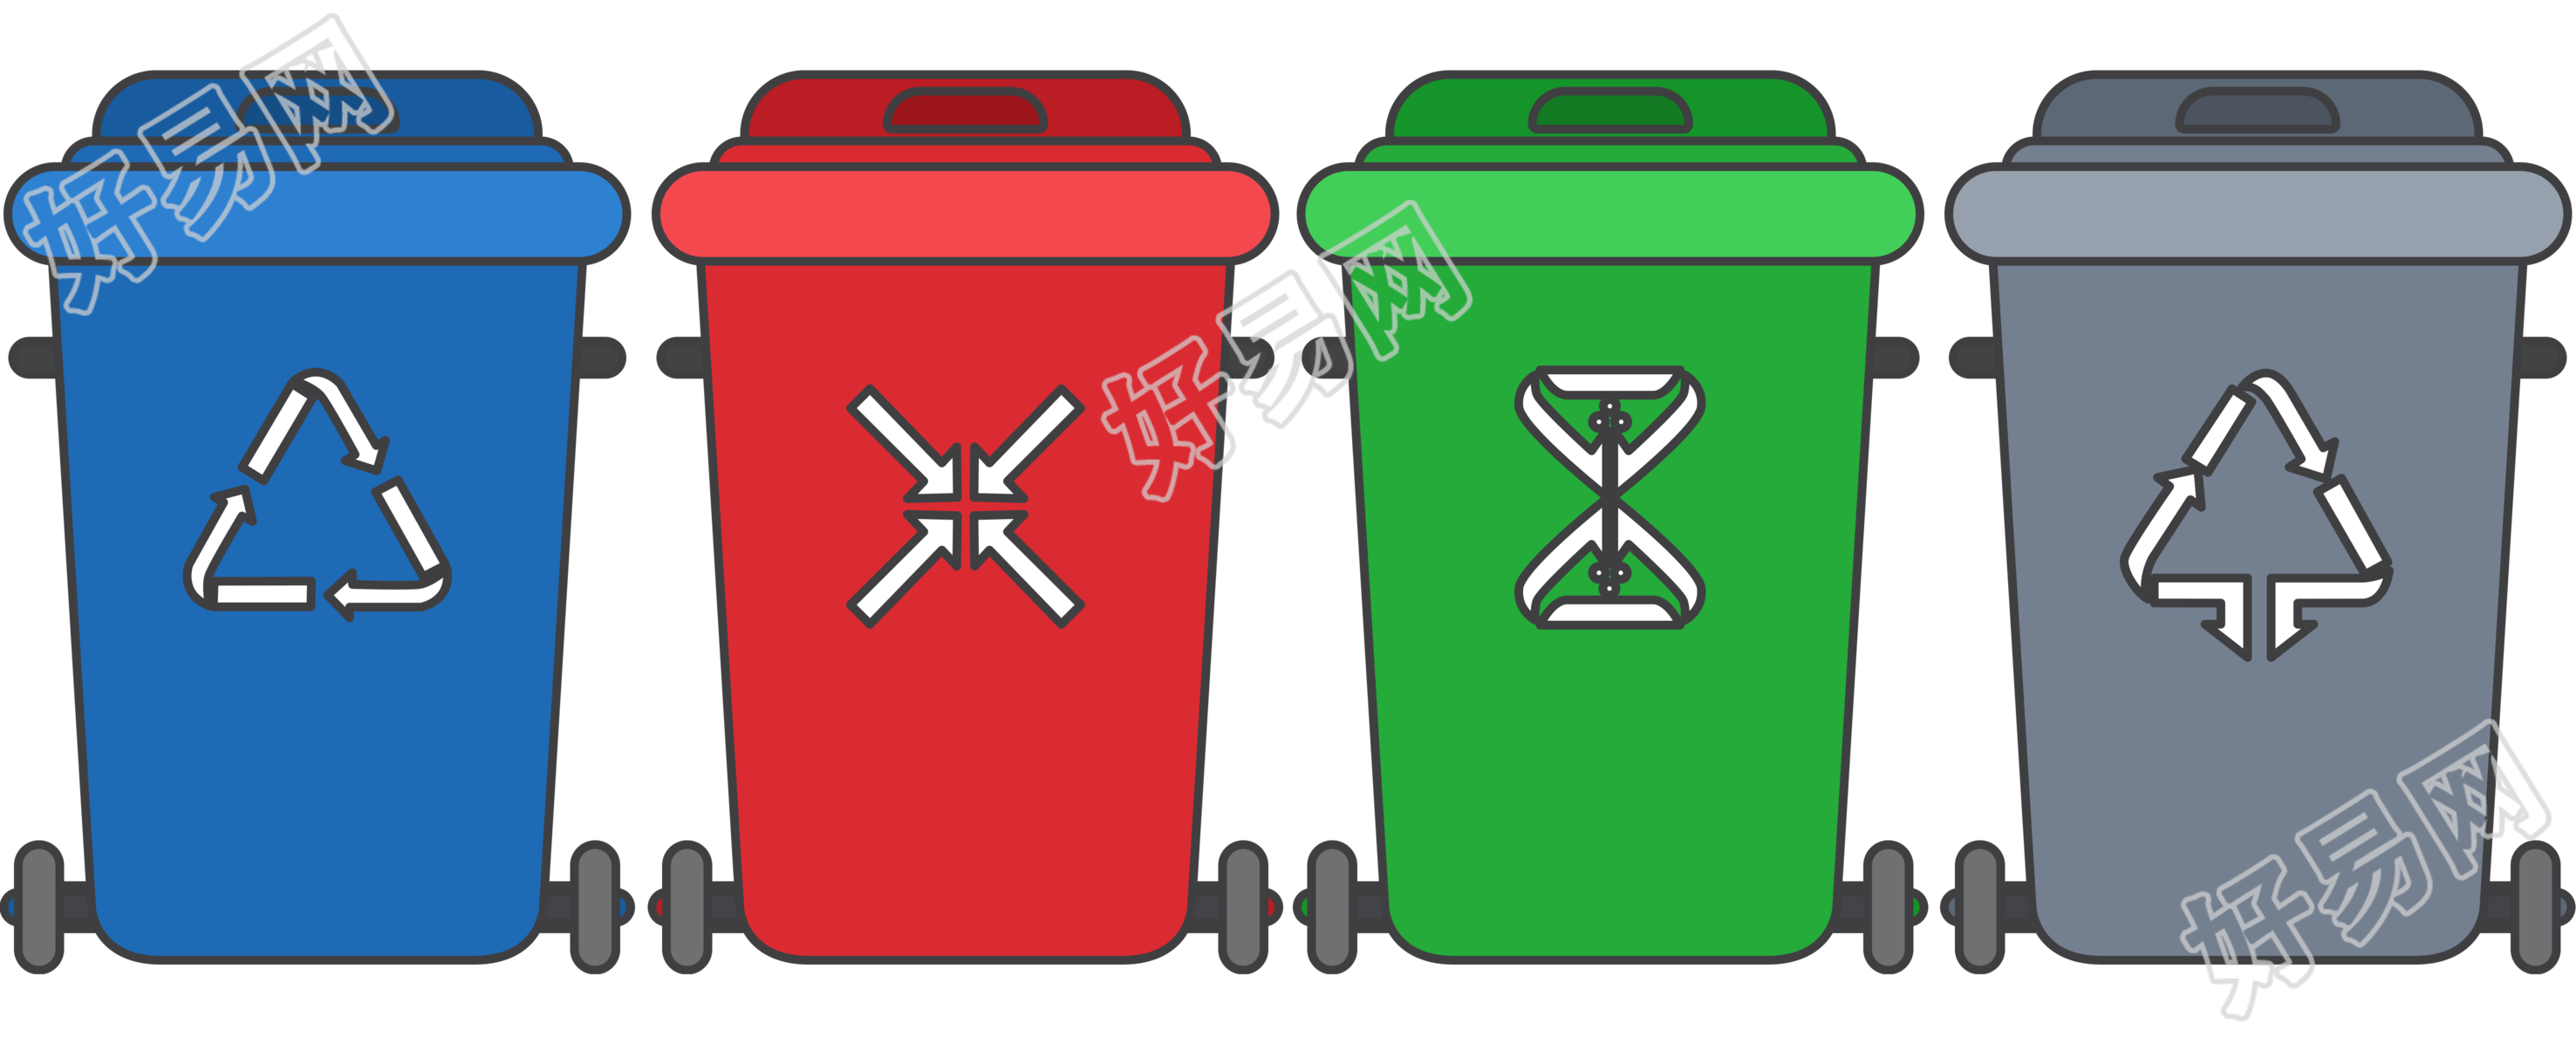 垃圾分类颜色不同的垃圾桶插画素材